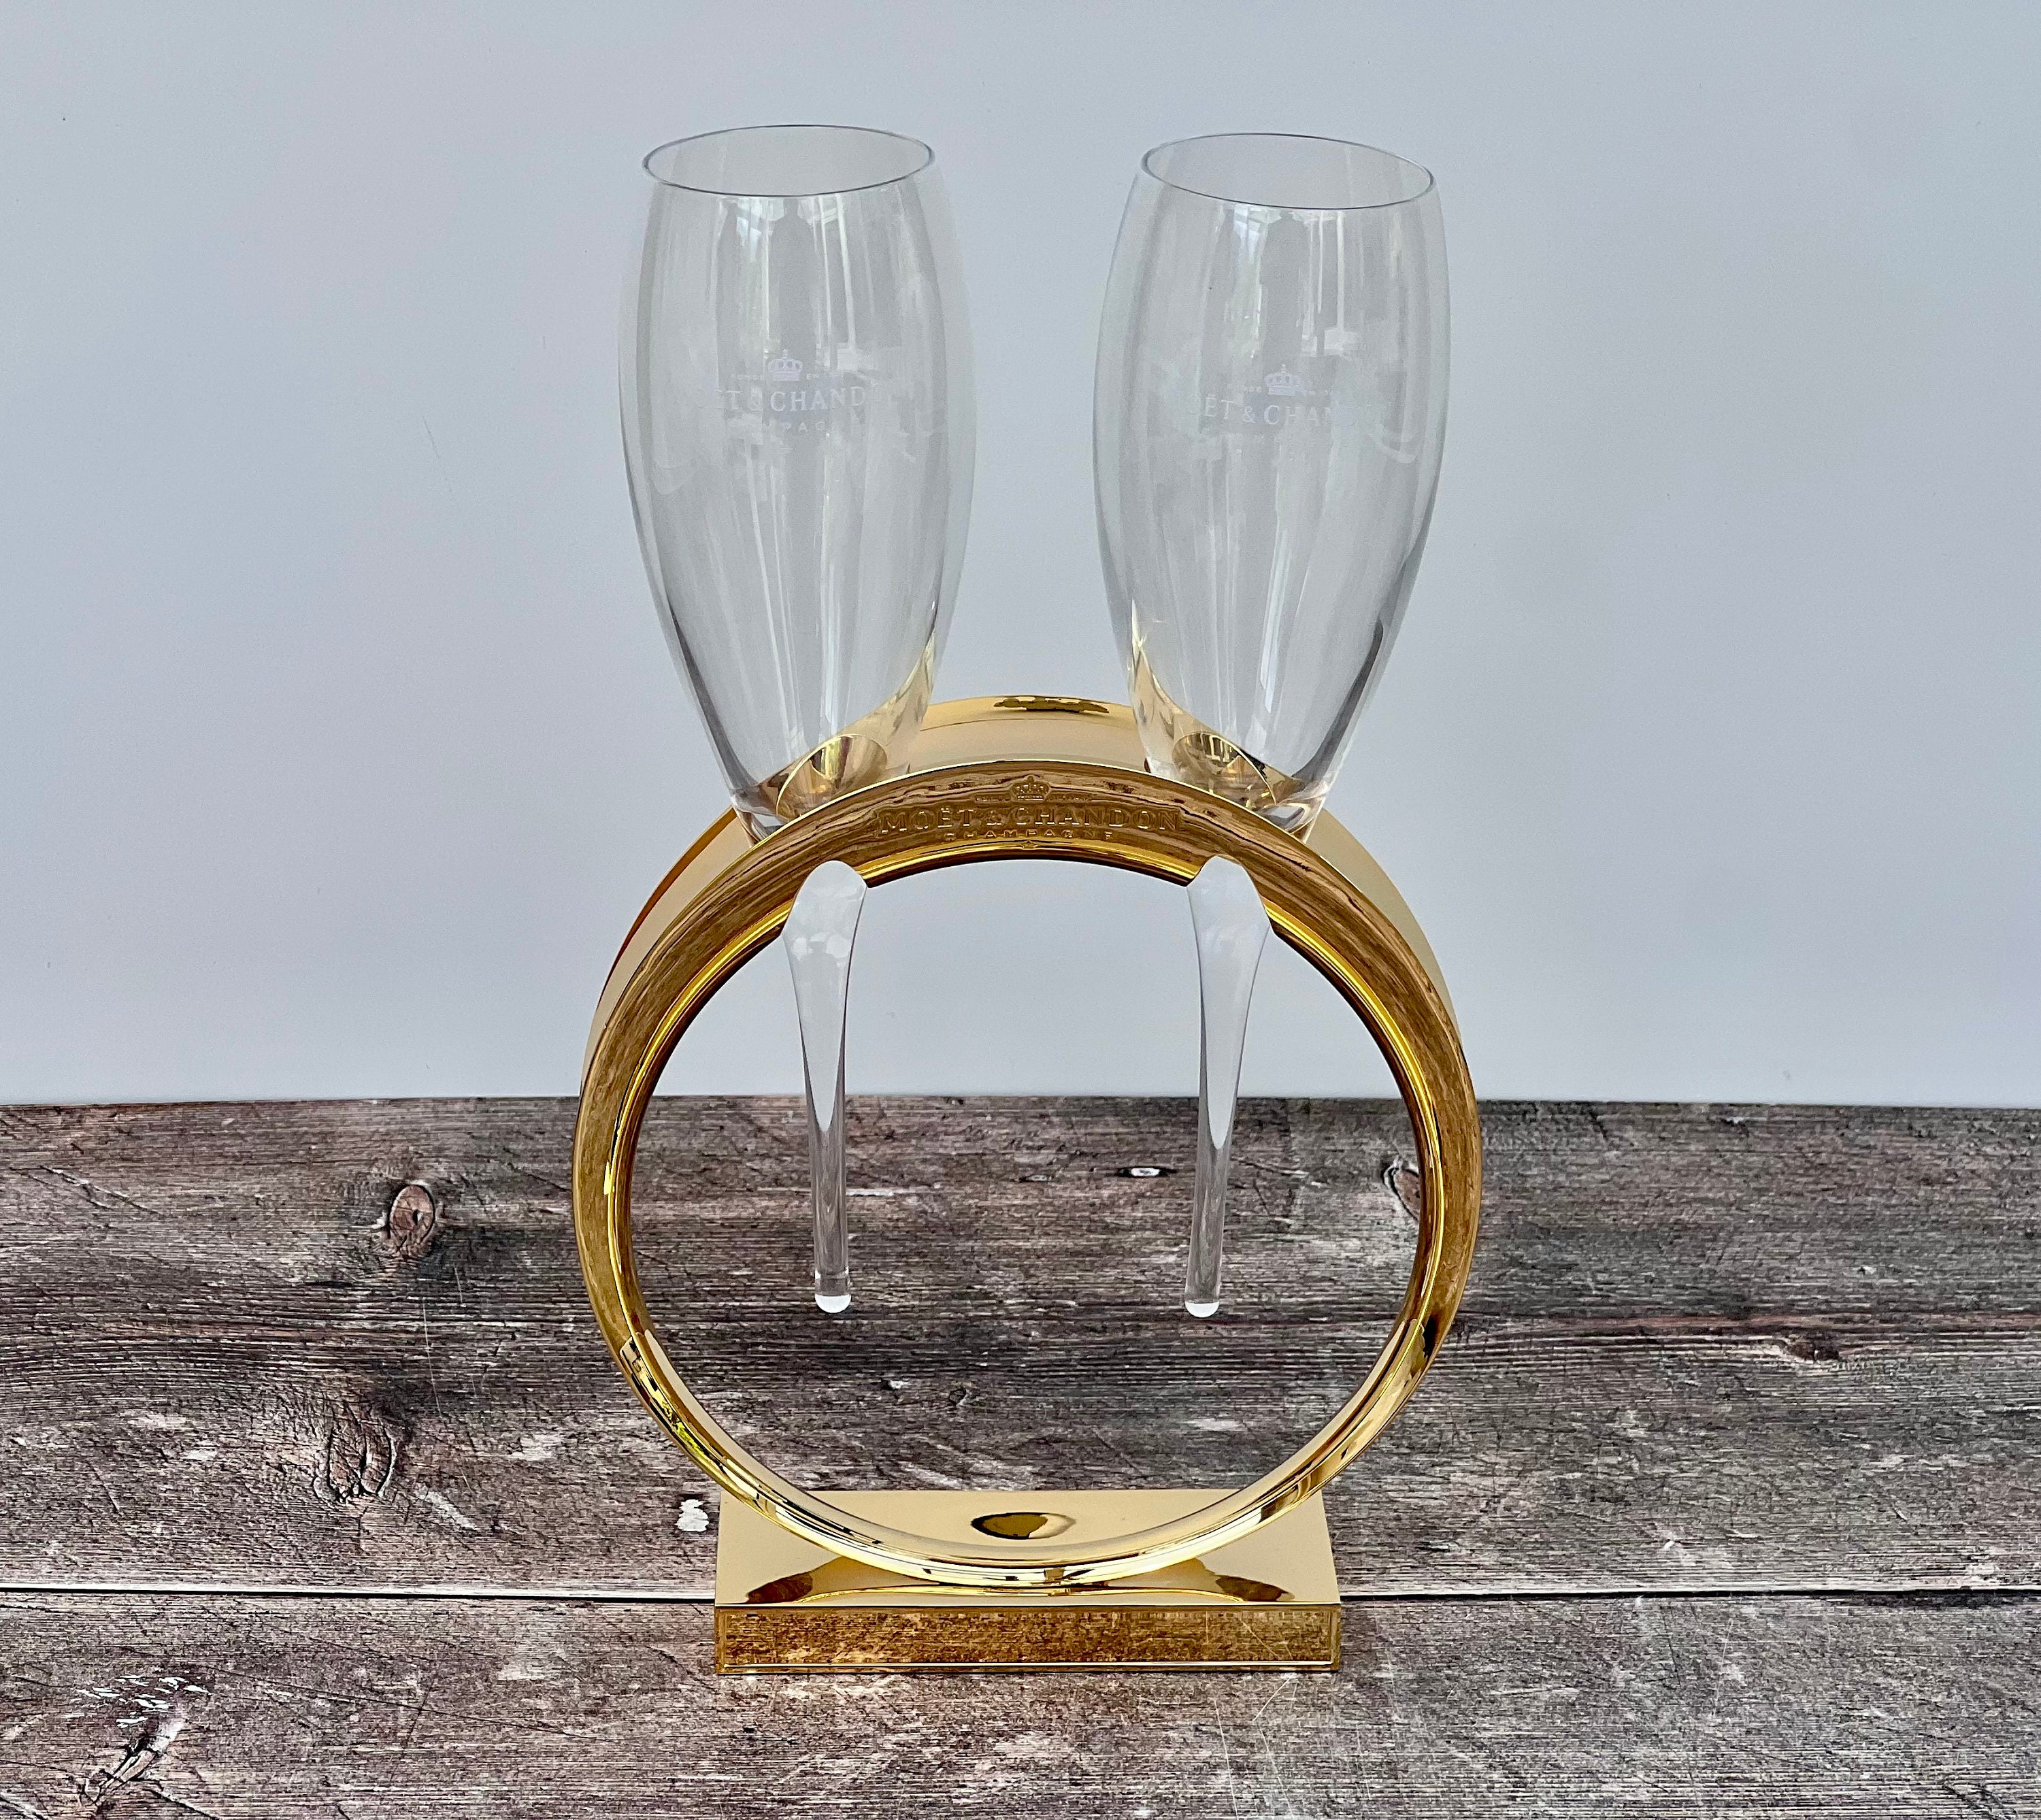 Moët & Chandon Champagne Glasses Golden Glass Box Set 450 ml  (6 pcs): Champagne Glasses